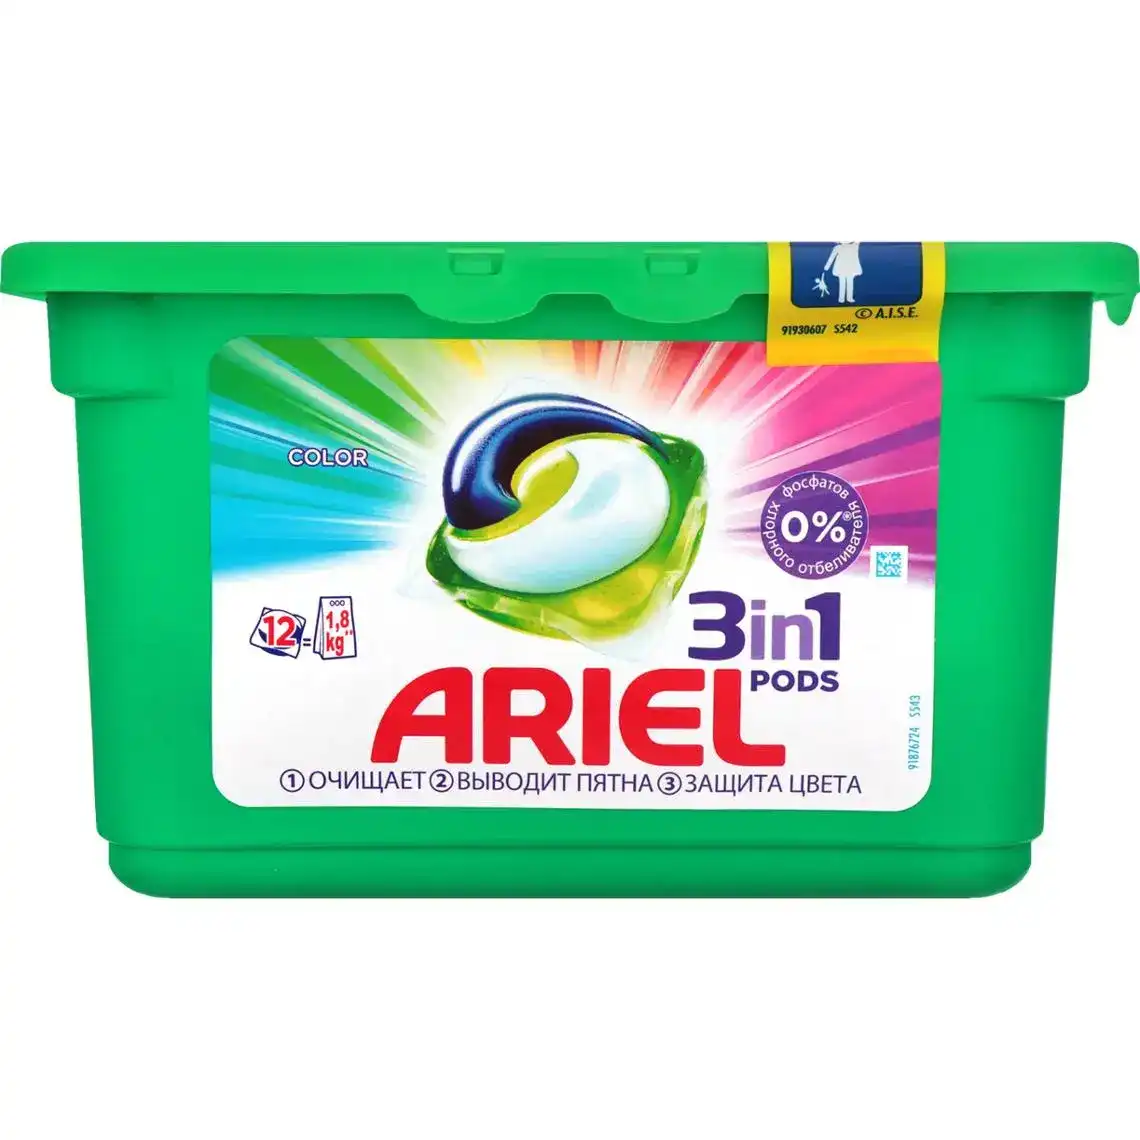 Капсули для прання Ariel 3в1 Pods Color 12 шт.